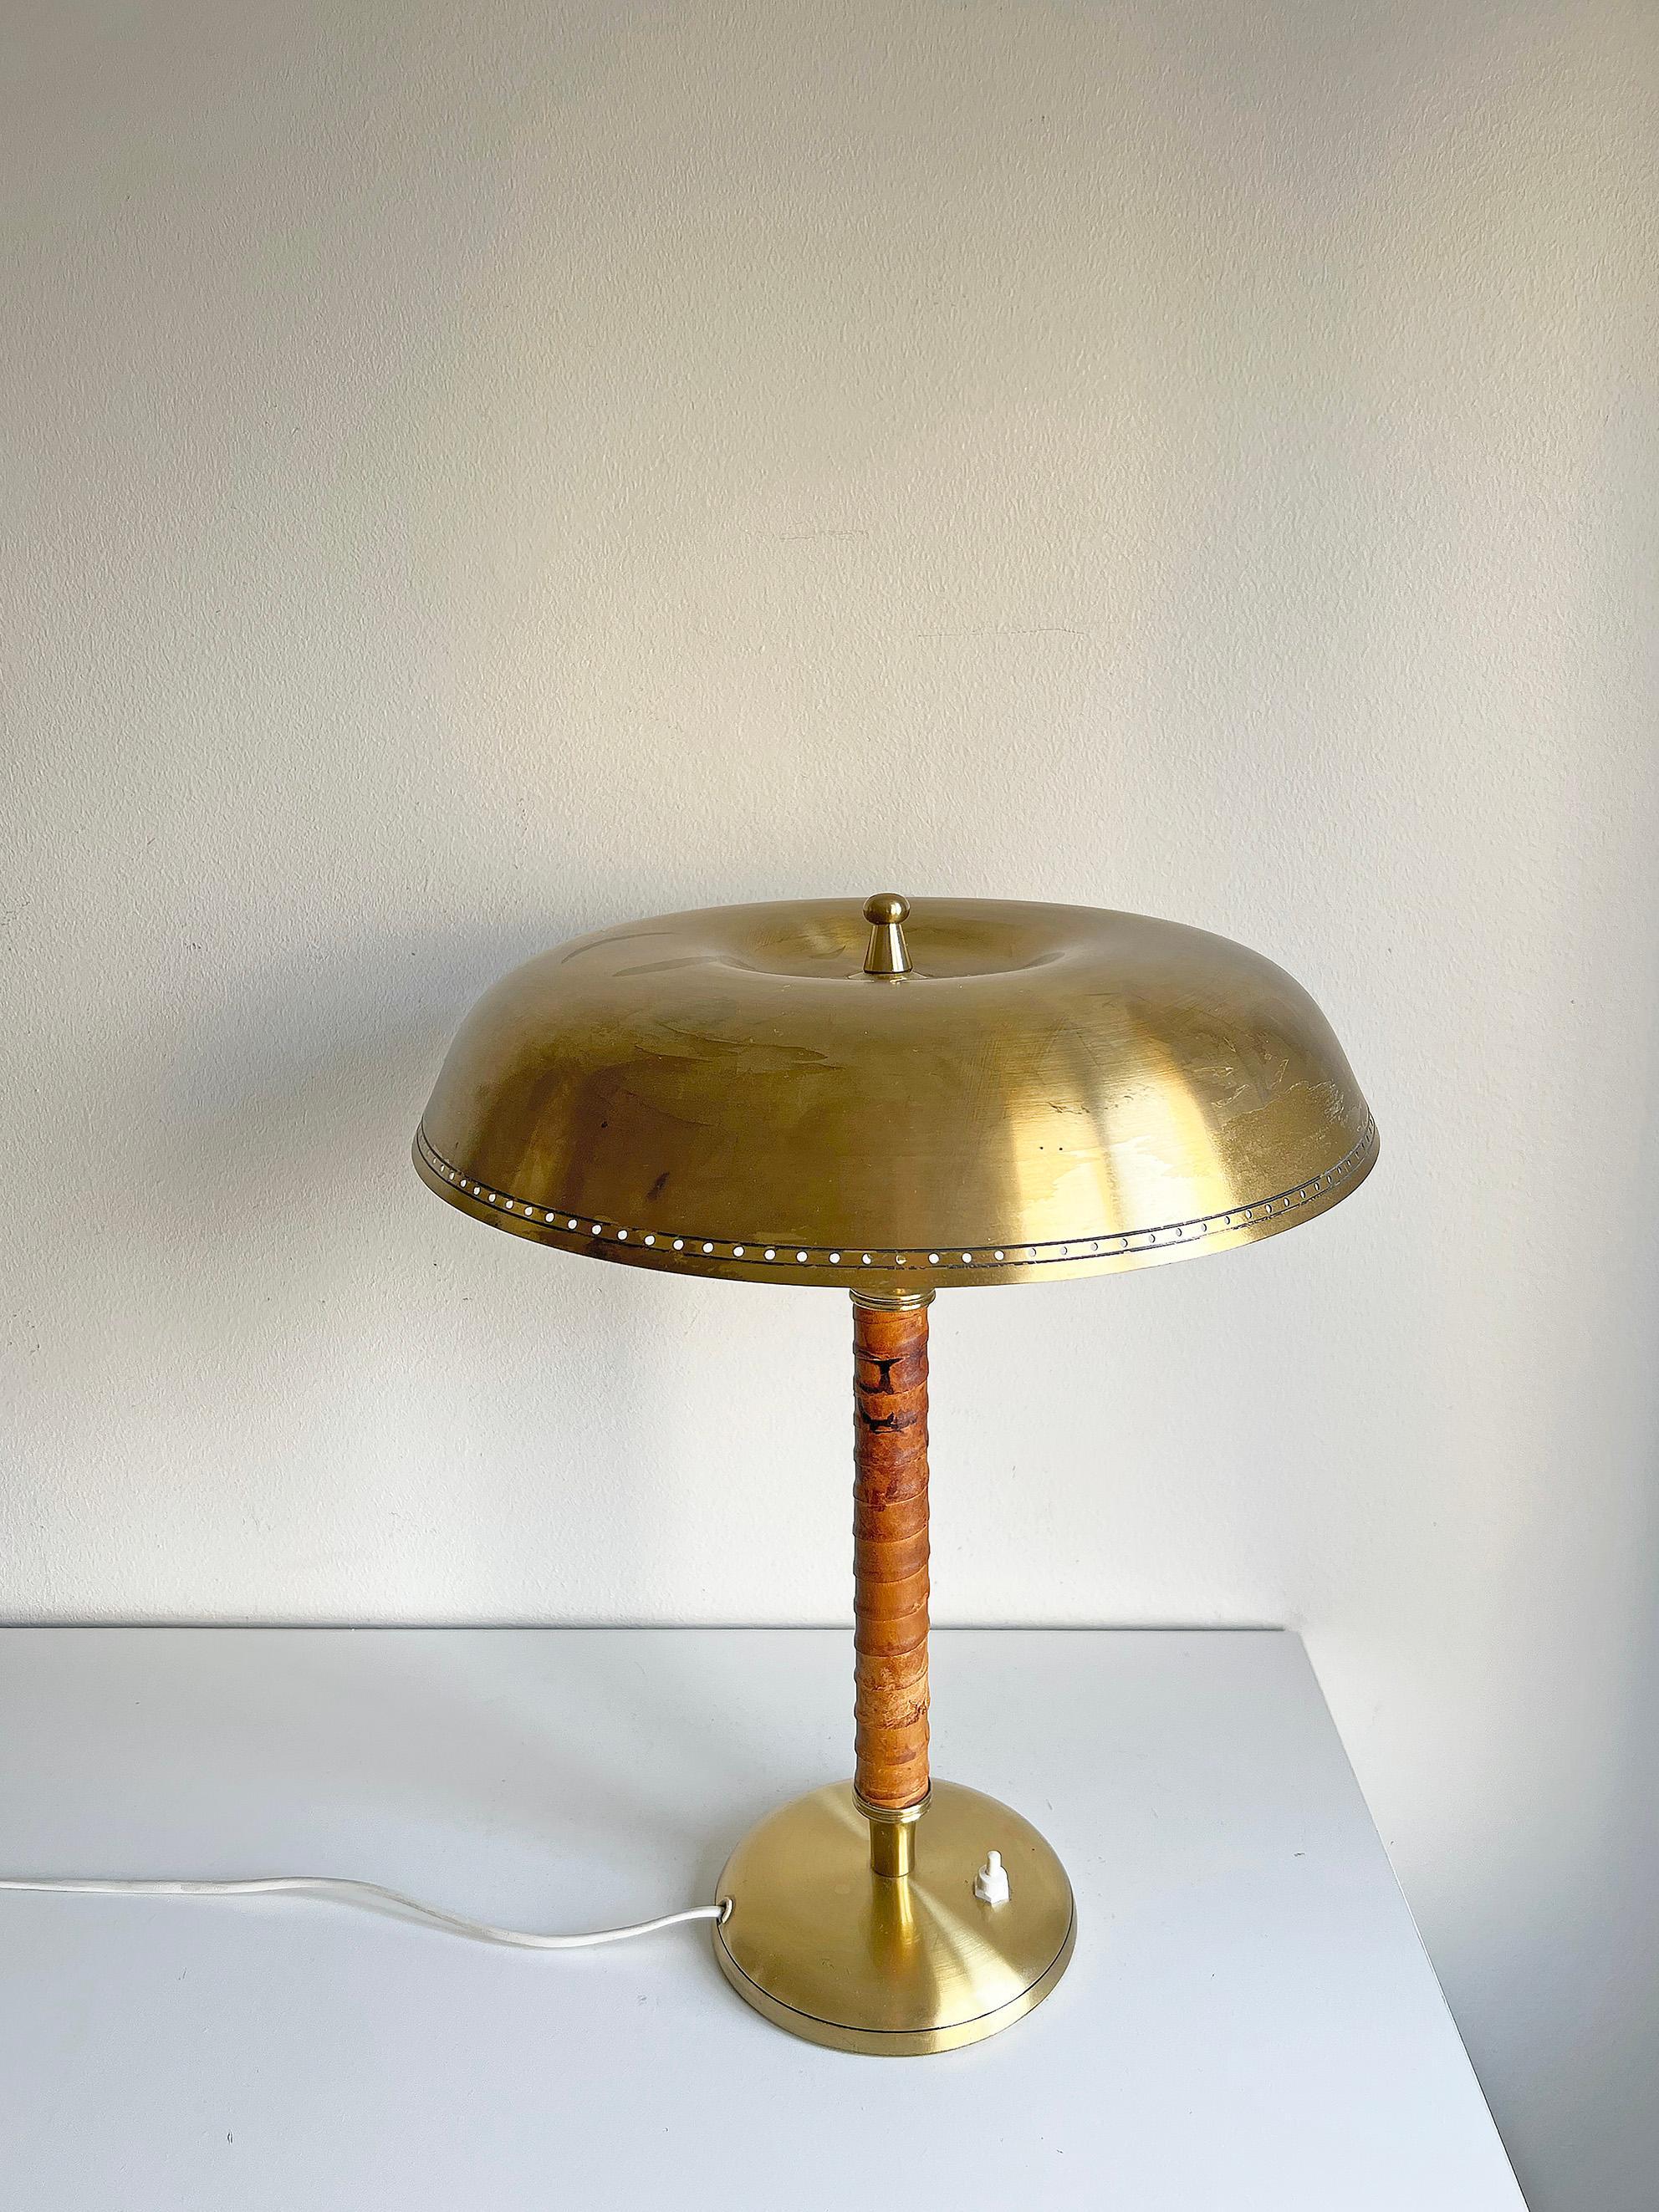 Rare lampe de table modèle 8452 par Boréns, Suède. 
Signé avec la marque du fabricant.
Condit : Bon état vintage, usure conforme à l'âge et à l'utilisation, patine du laiton et du cuir. 
L'ombre est légèrement inclinée.
Recâblé. Nous